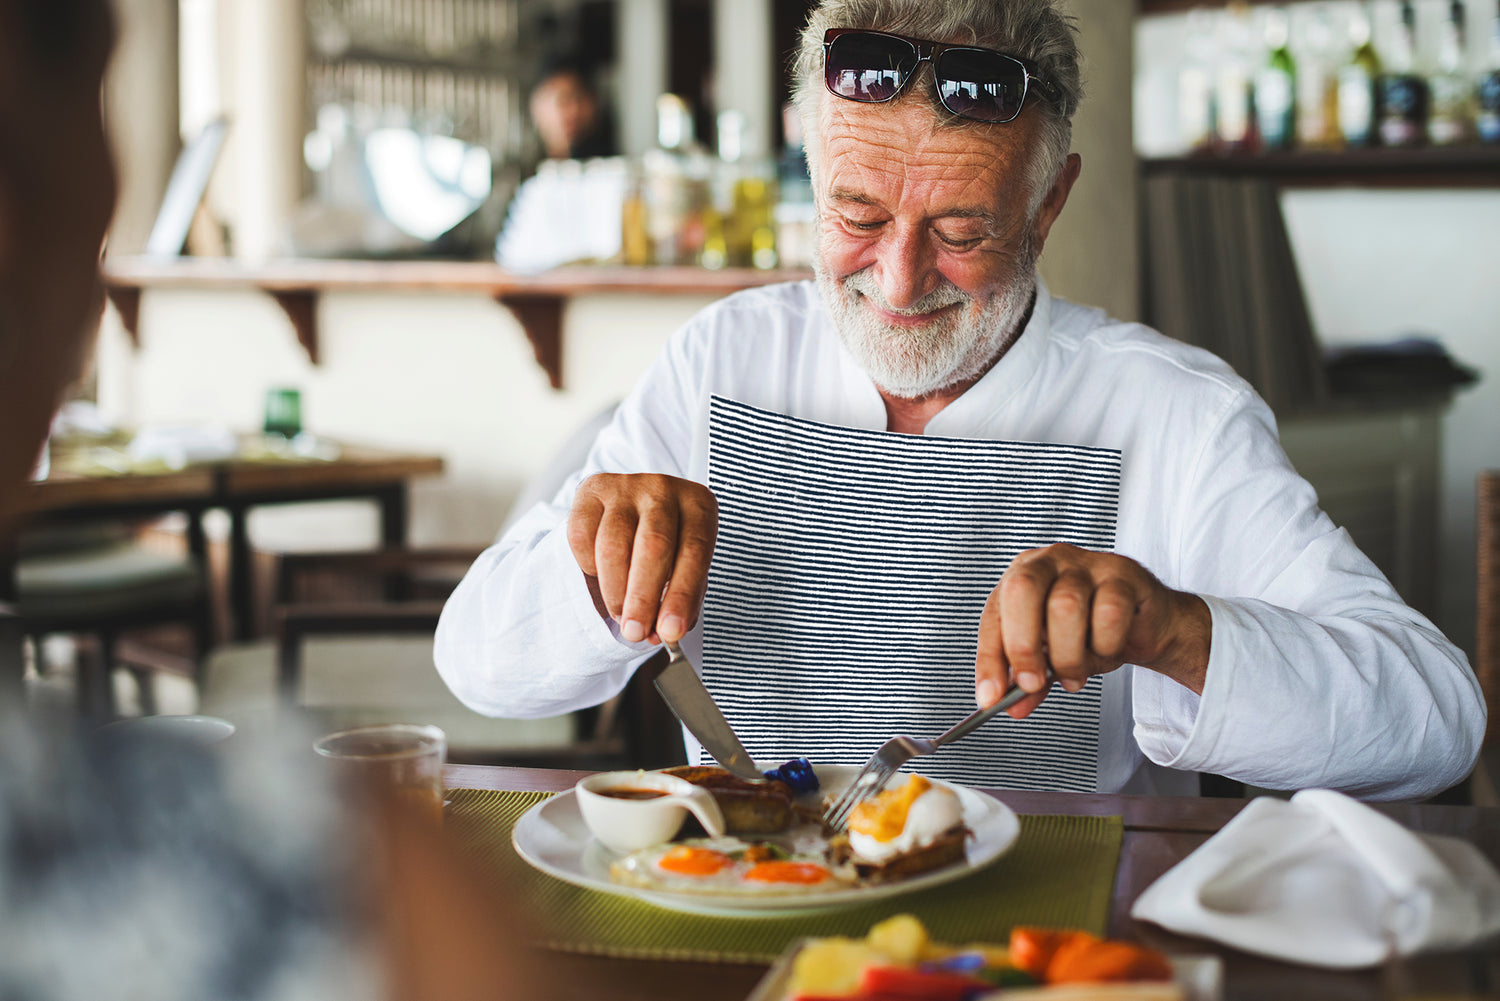 Senior aged man wearing a NEATsheet with Blue Ticking pattern while enjoying brunch.